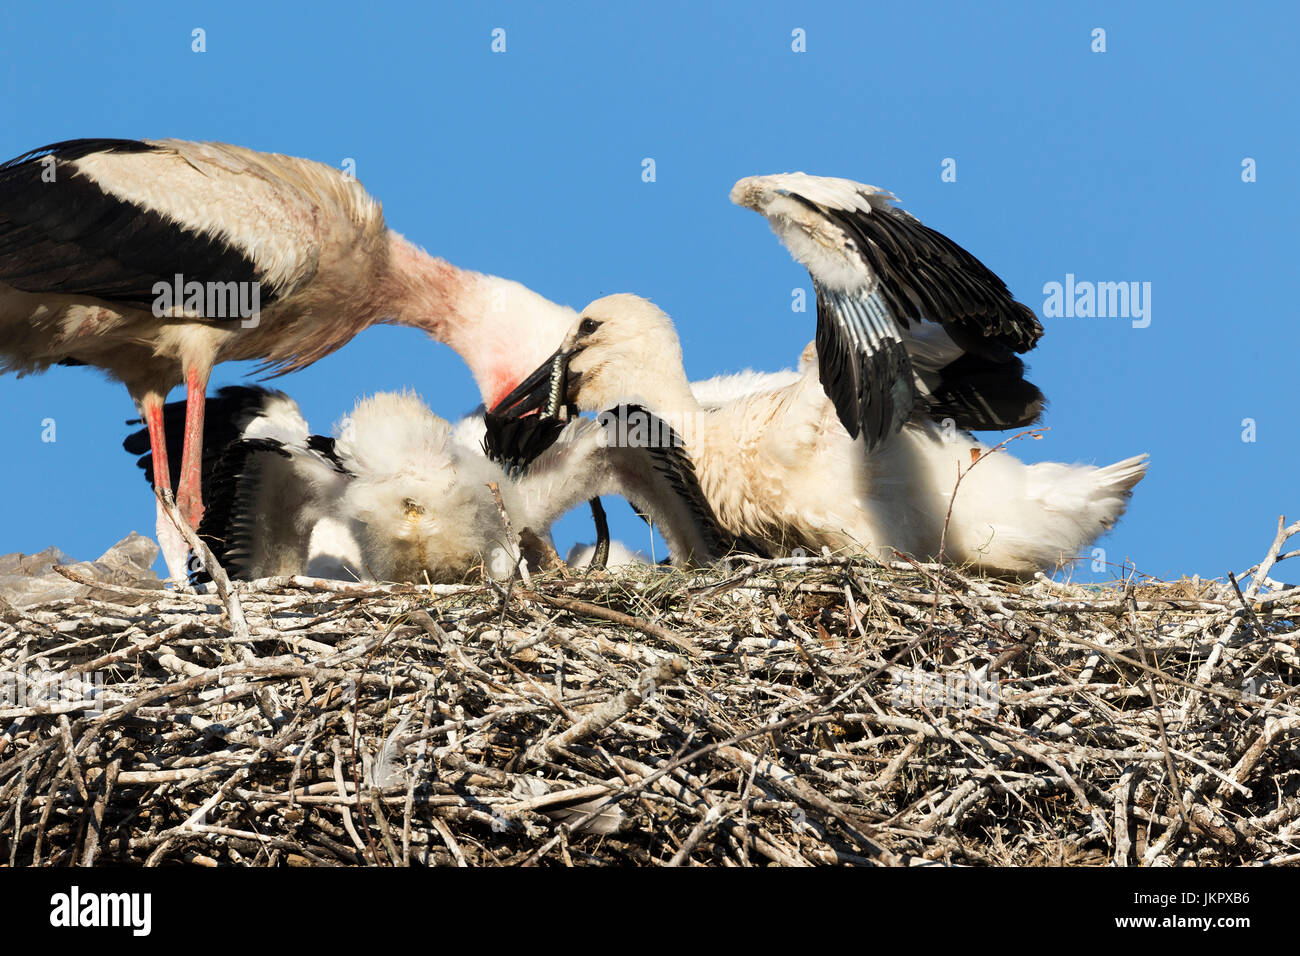 White stork feeding the offspring in the nest, Čigoć village in Lonjsko polje, Croatia Stock Photo